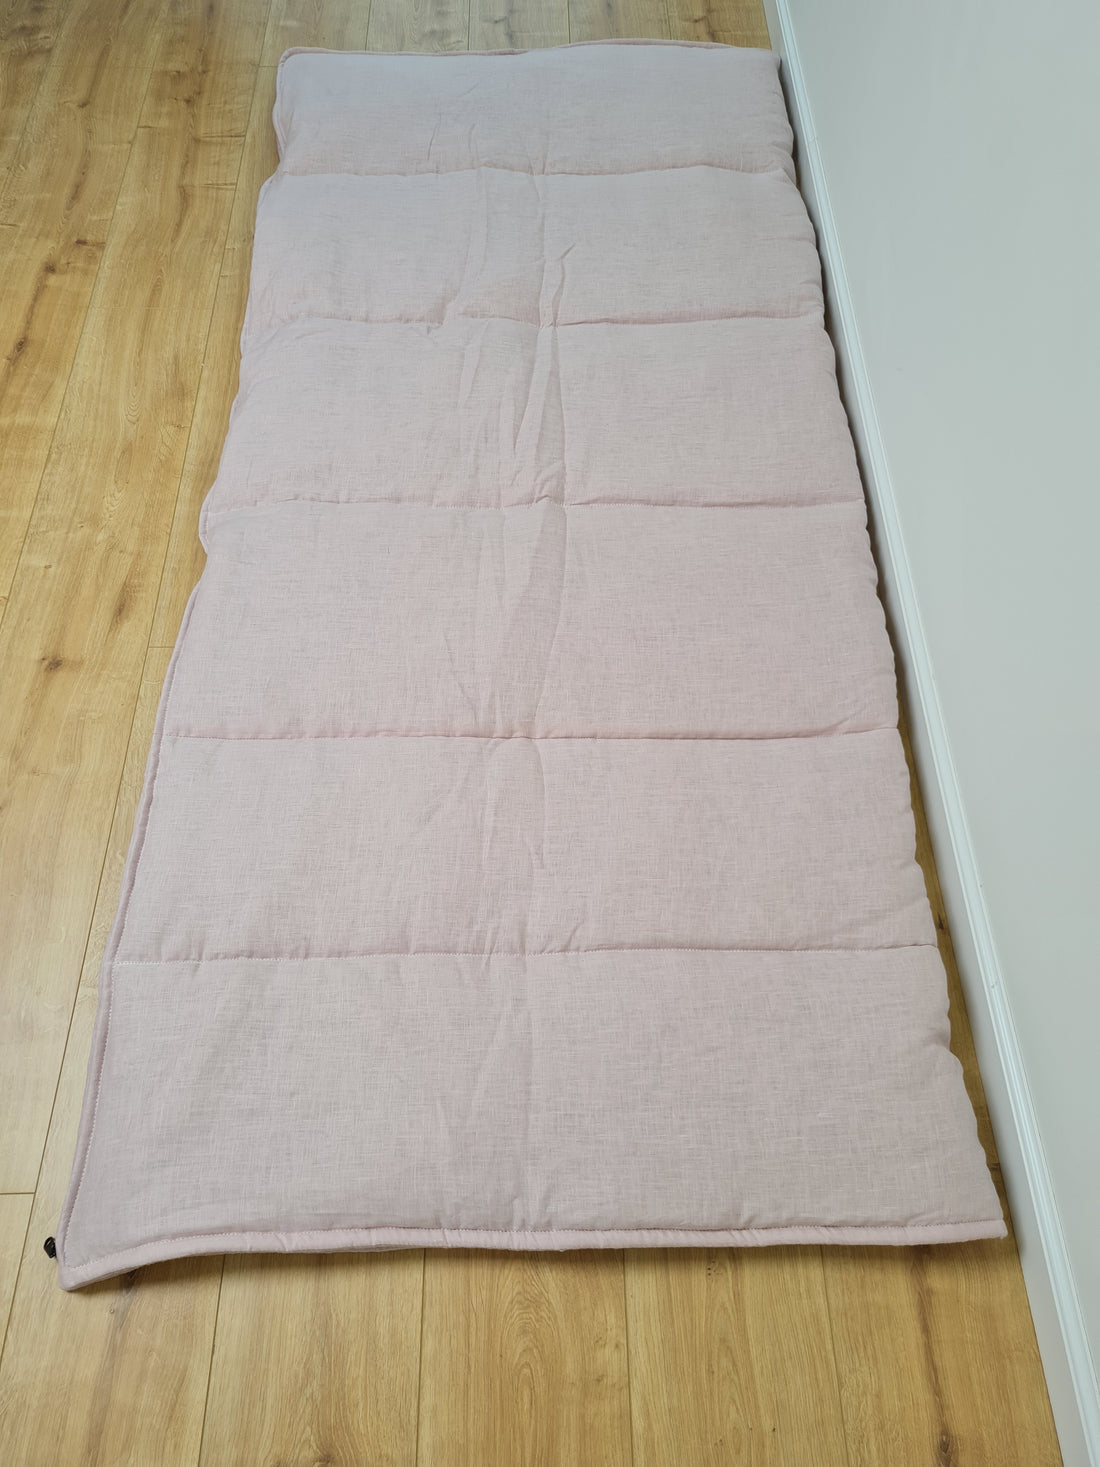 Thick HEMP Sleeping bag in washed ashen pink linen fabric- organic hemp fiber filling + linen fabric - blanket quilt, hand made